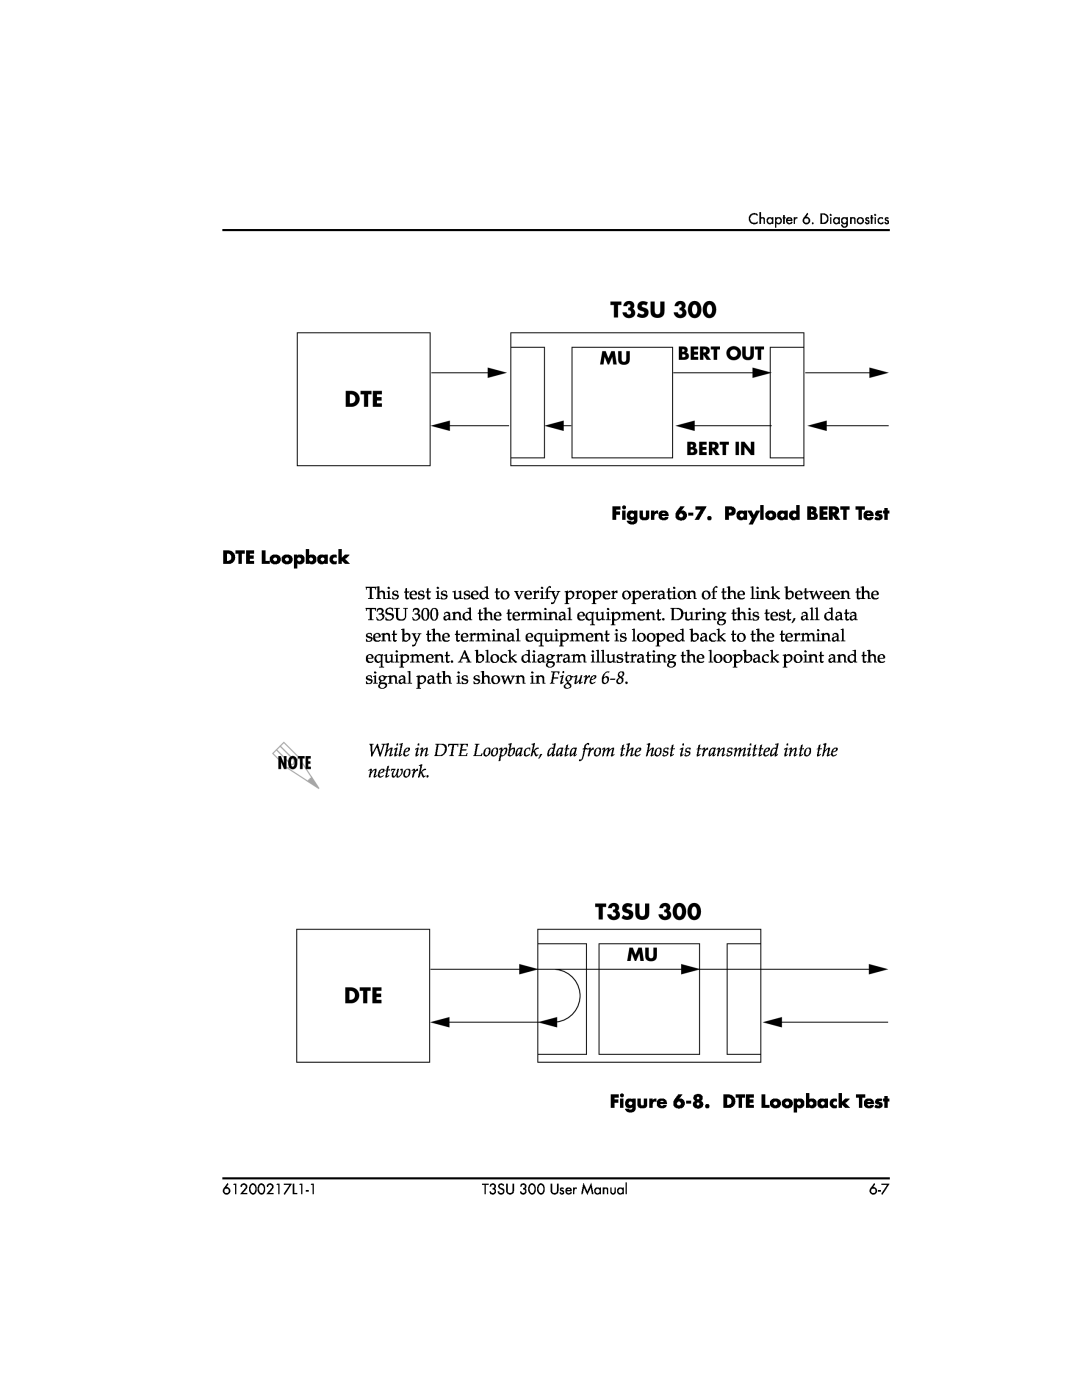 ADTRAN T3SU 300 user manual Bert Out, Bert In, 7. Payload BERT Test, 8. DTE Loopback Test 